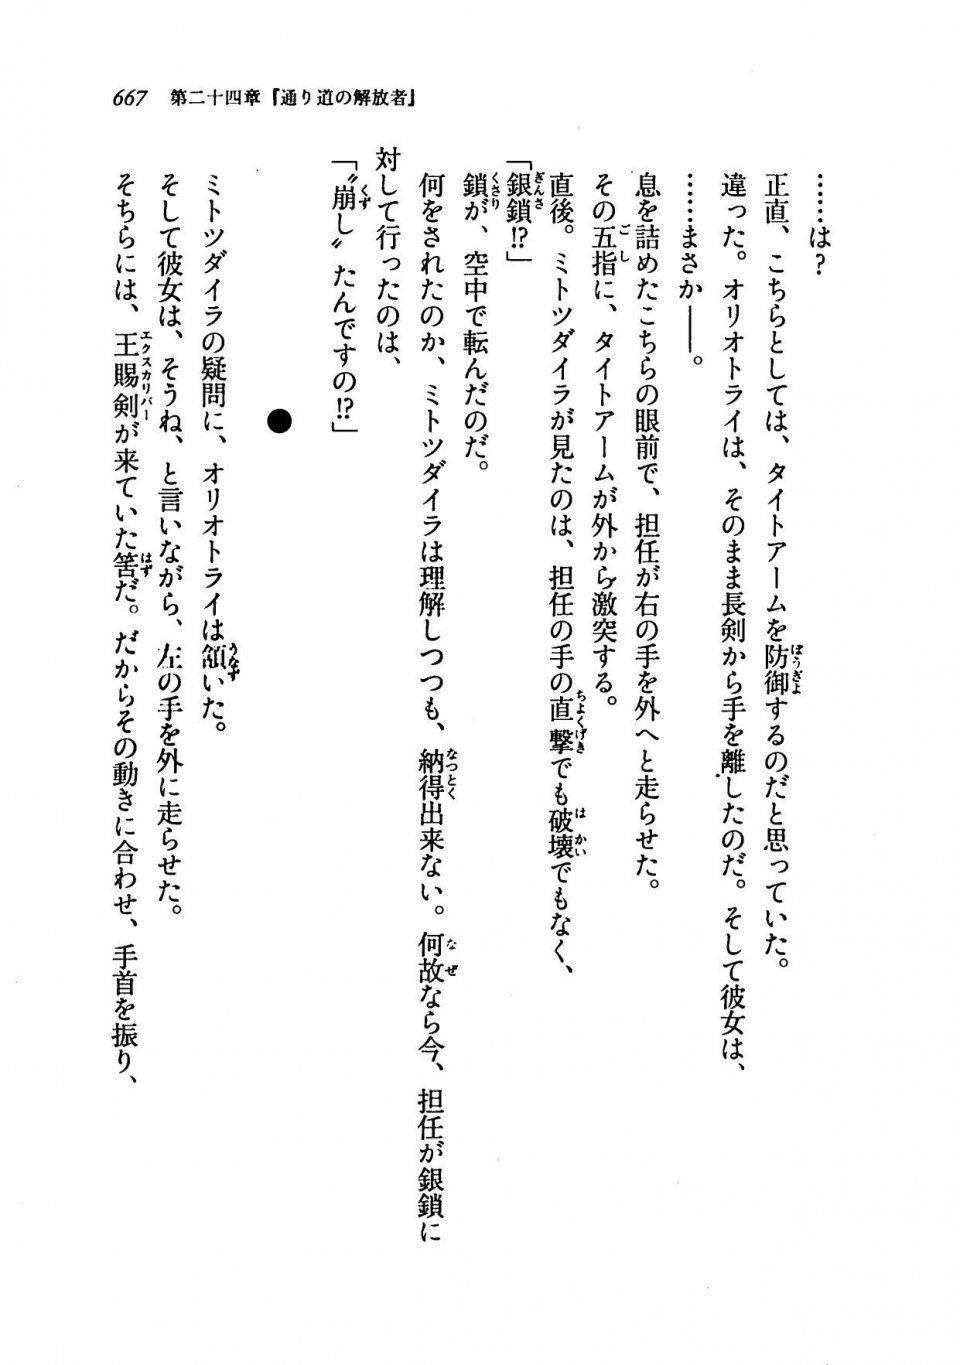 Kyoukai Senjou no Horizon LN Vol 19(8A) - Photo #667